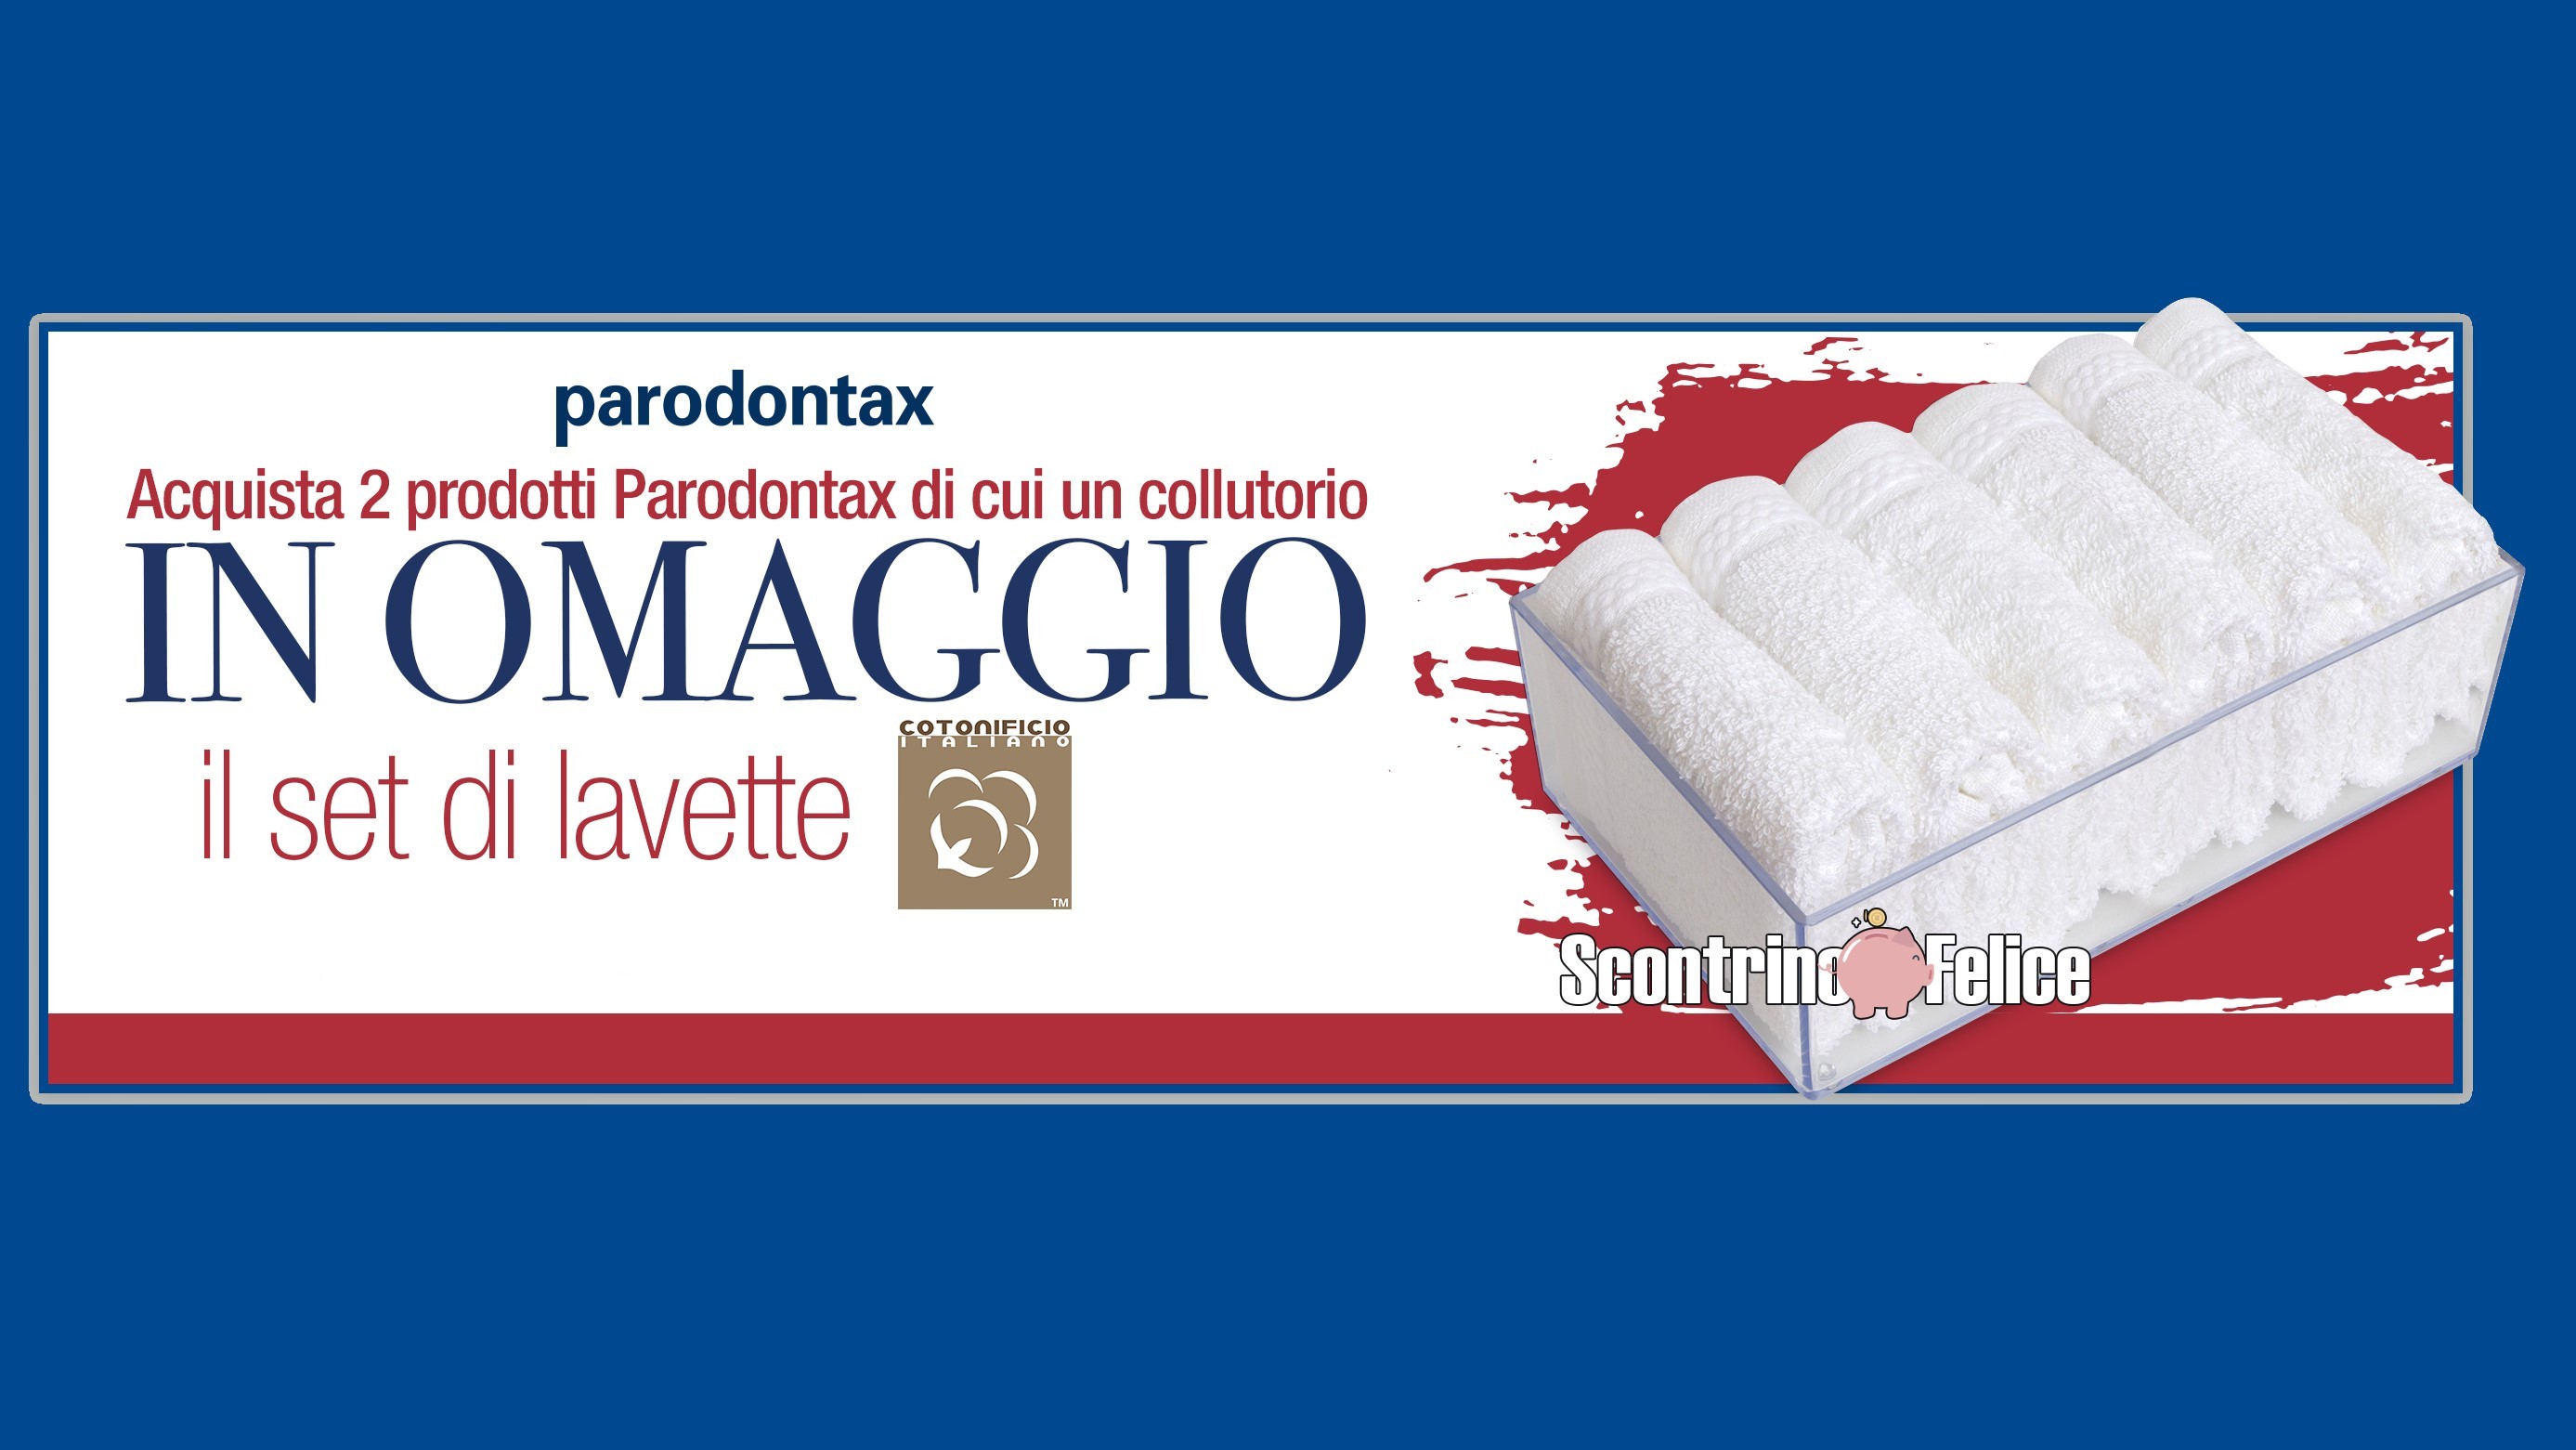 parodontax set lavette cotonificio italiano premio sicuro